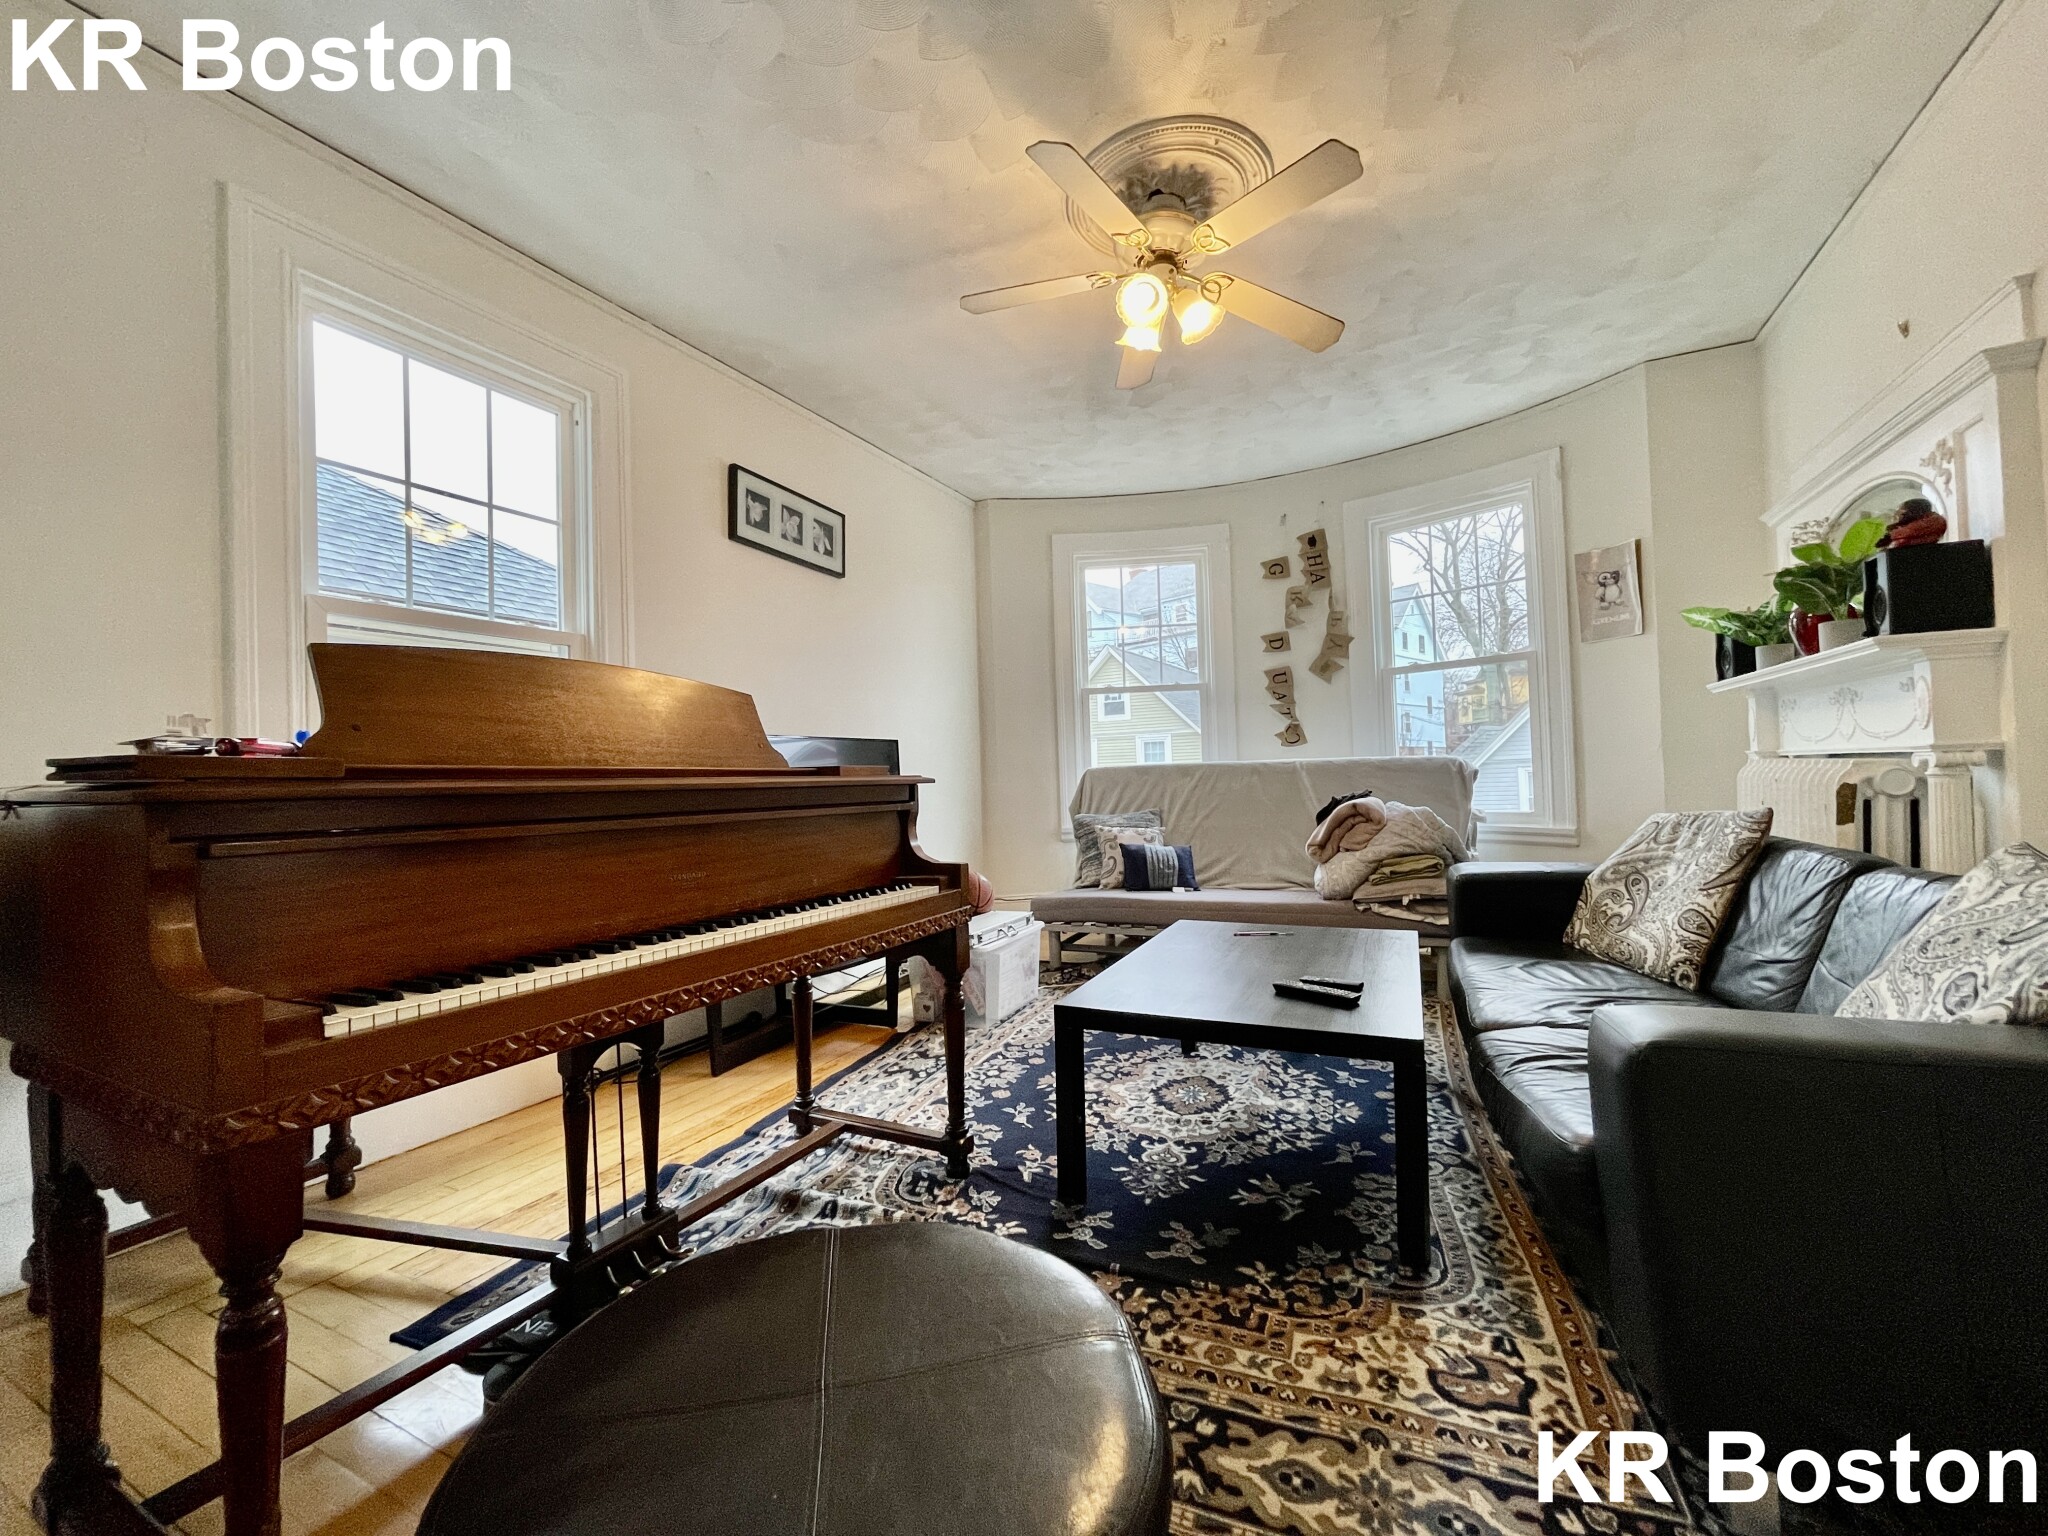 Photos of apartment on Royal,Boston MA 02134